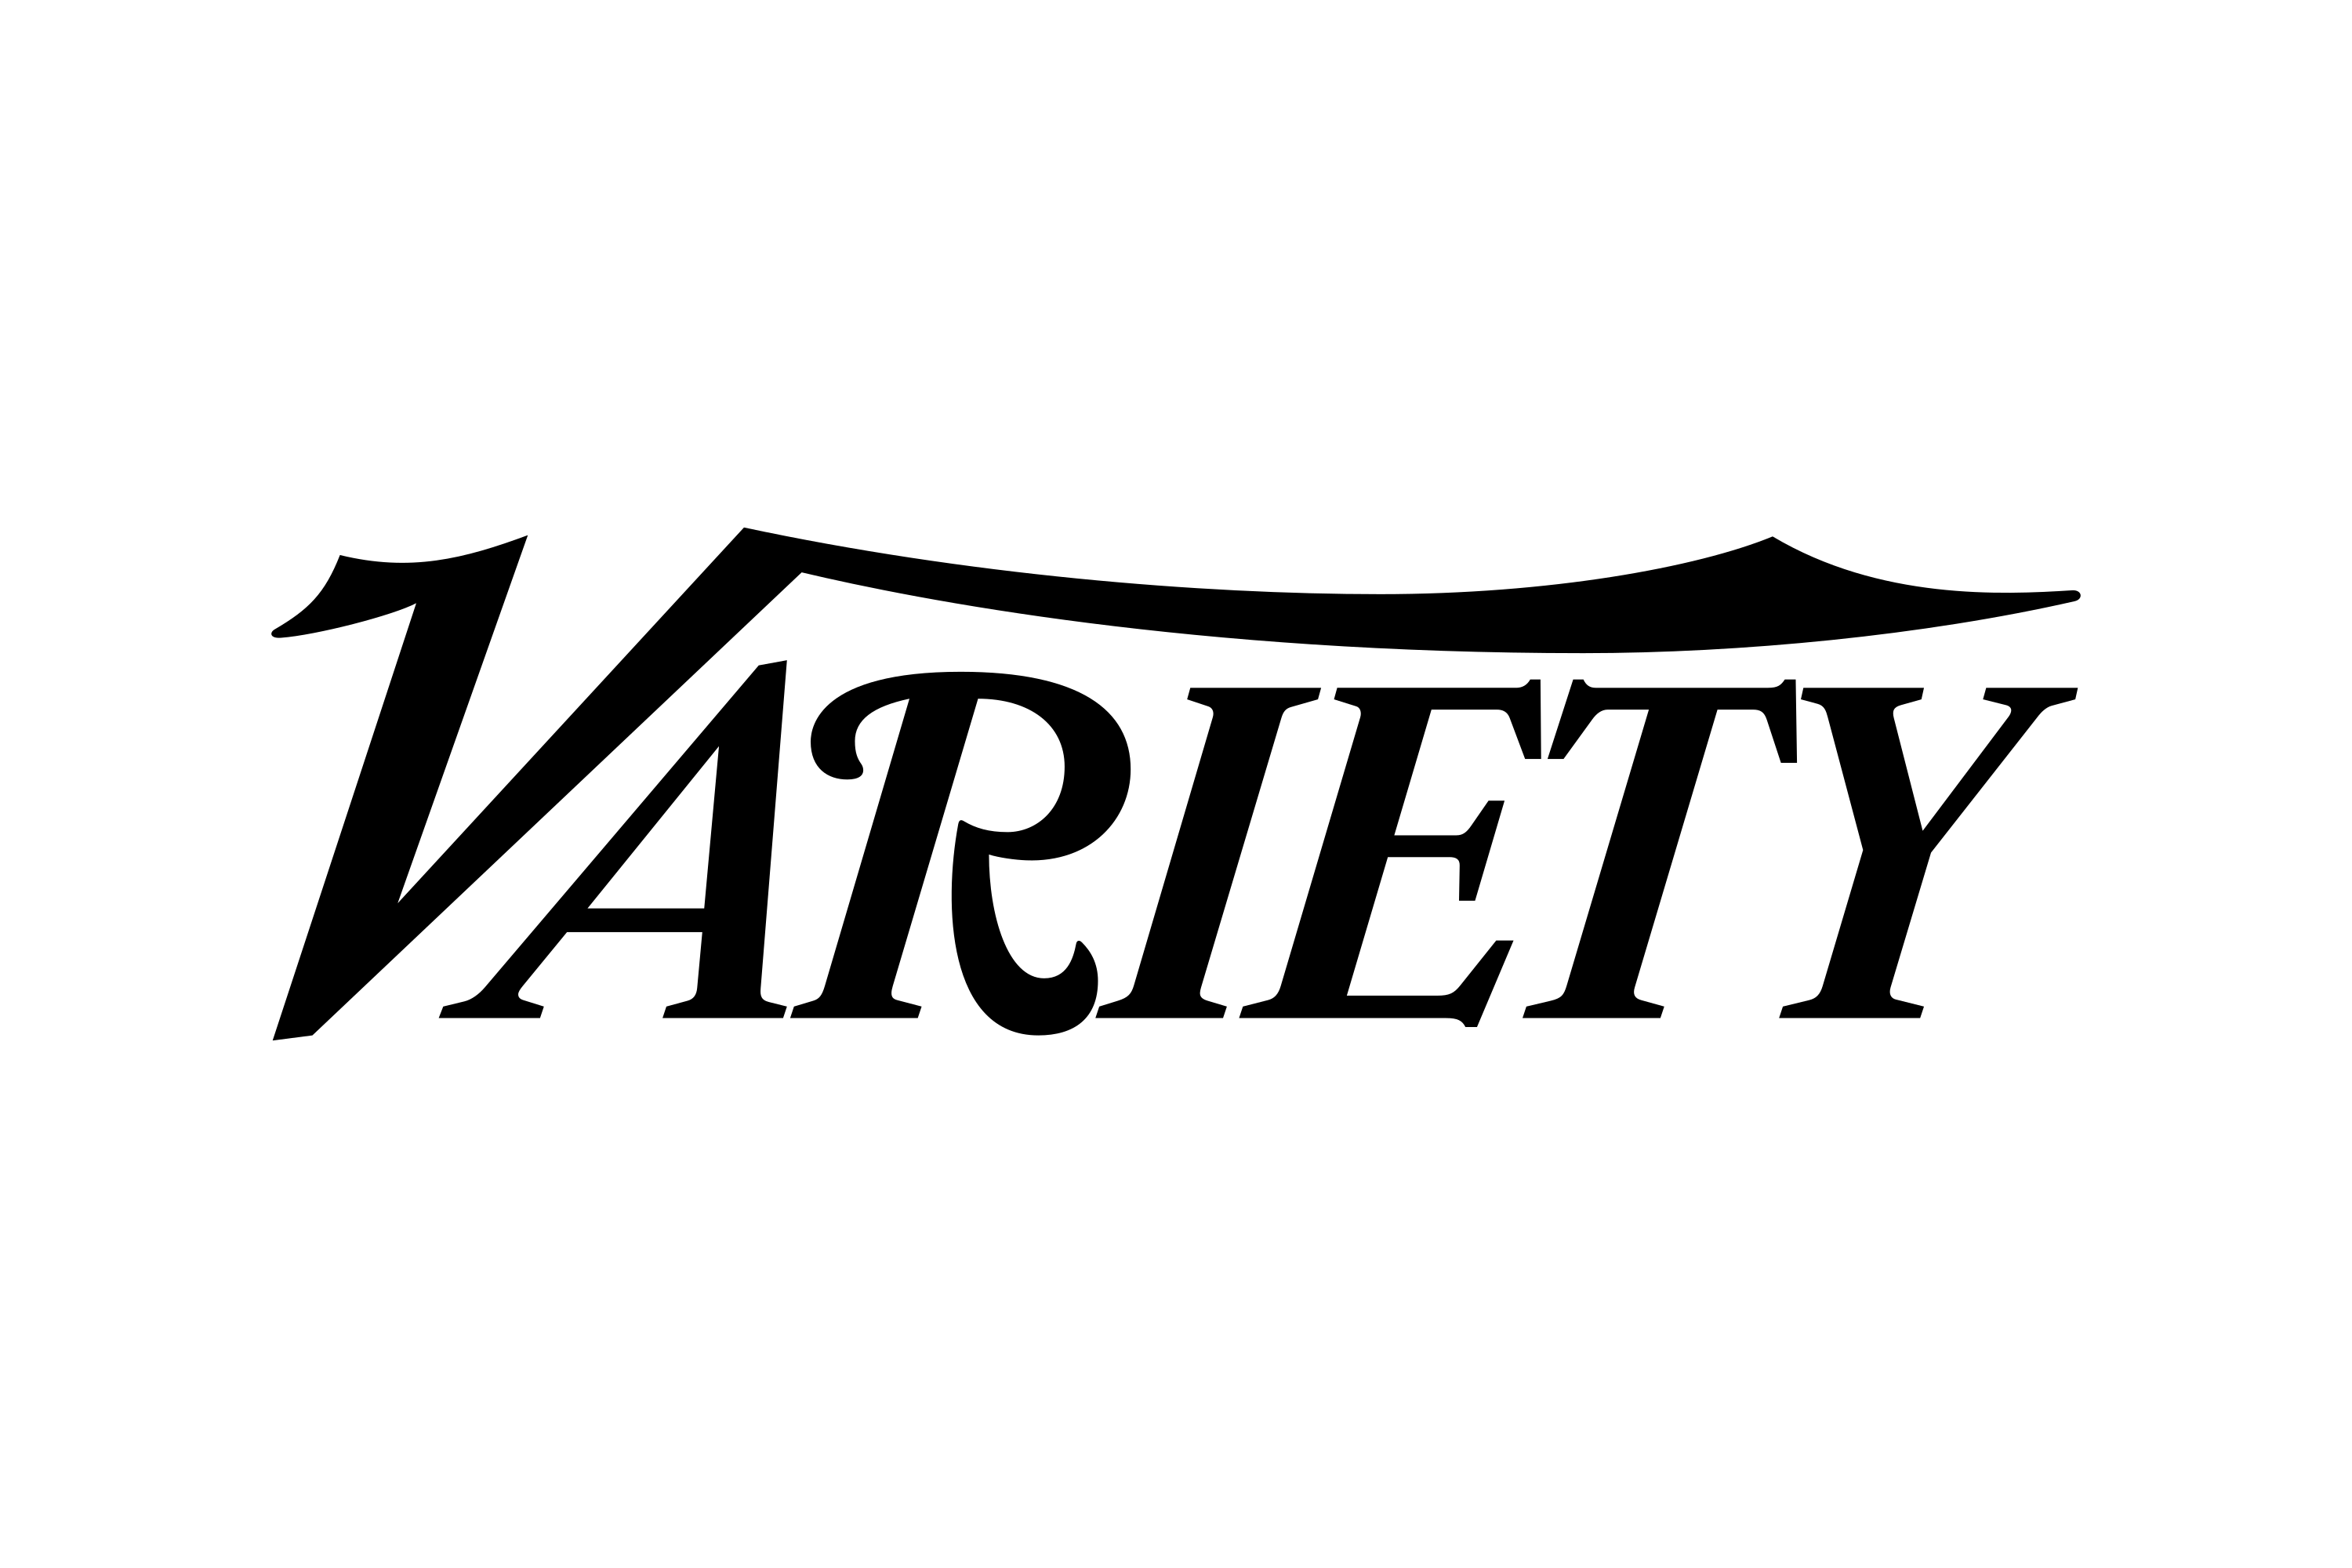 Variety announced Zibby’s new novel, Overheard, here!